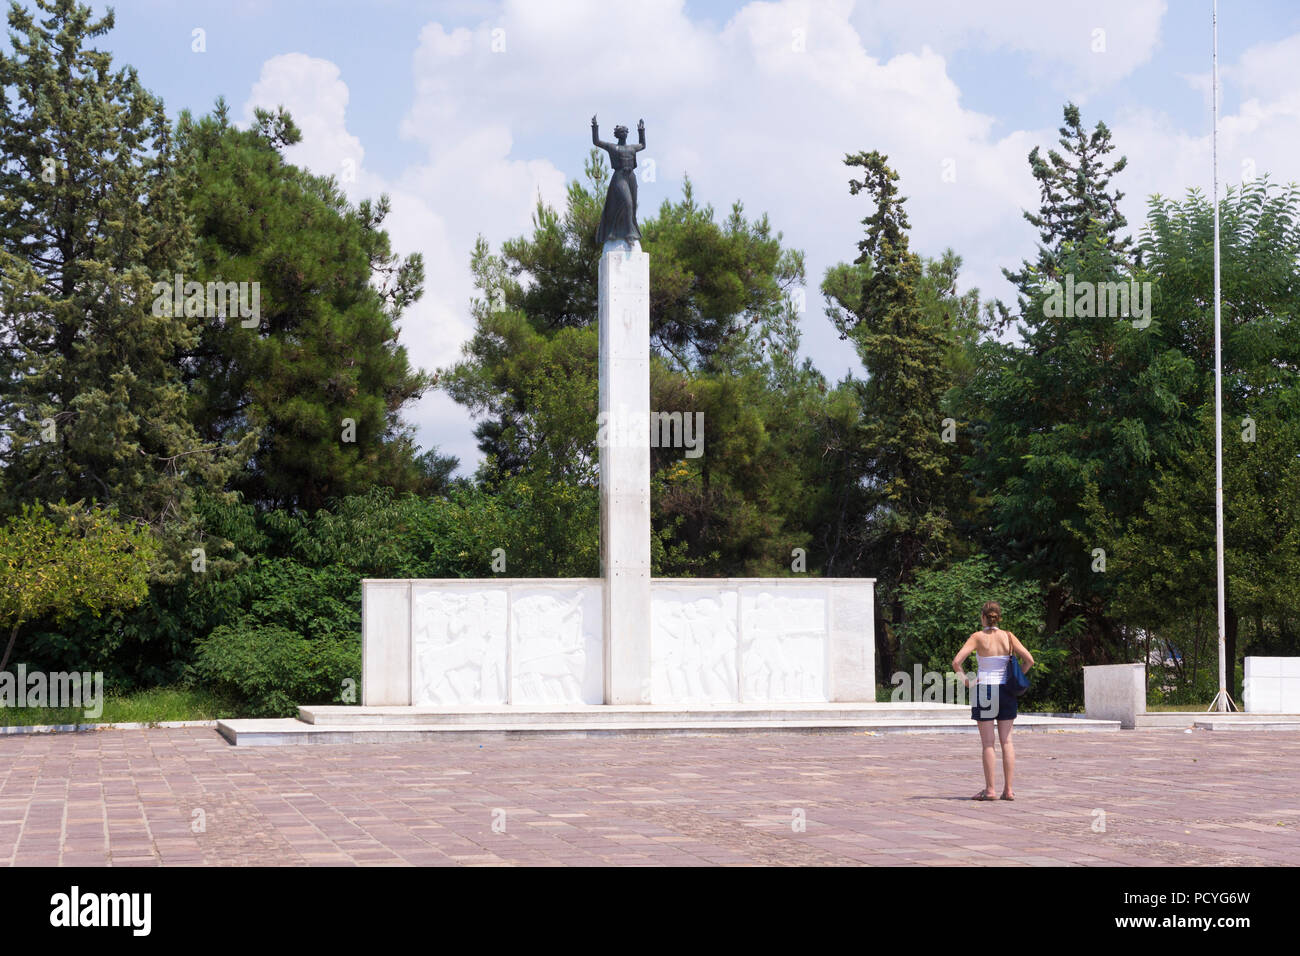 Le monument héros de la victoire symbolise la victoire de la Grèce dans la guerre gréco-italienne de 1940-41 et rend hommage aux indigènes déchus de Larissa. Grèce Banque D'Images